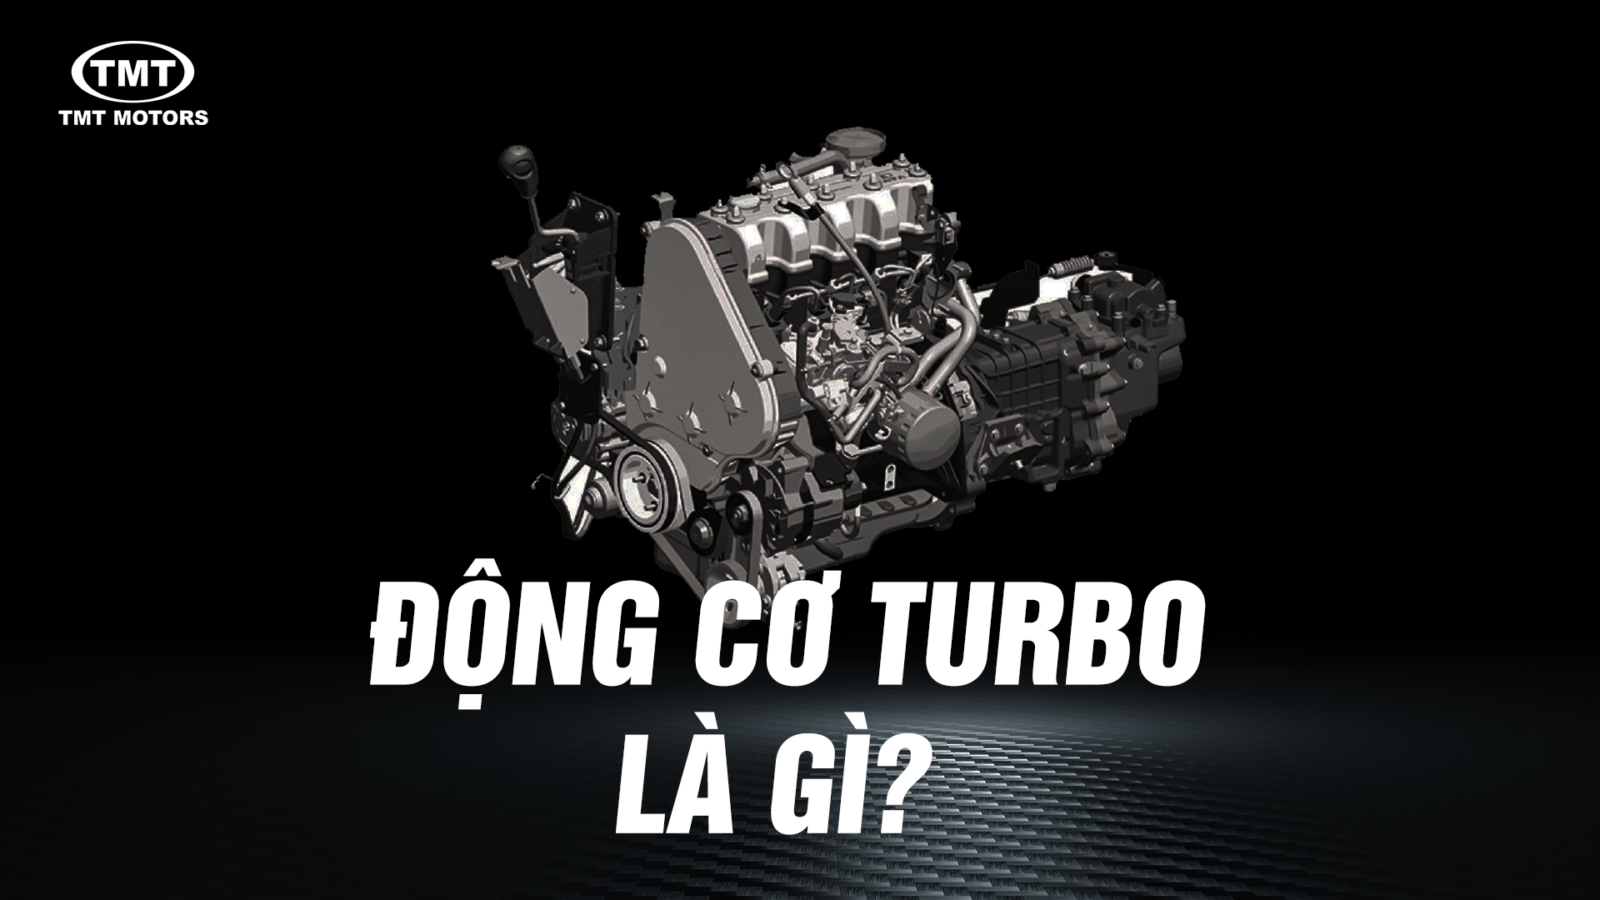 Động cơ Turbo là gì? Ưu điểm và những lưu ý khi sử dụng động cơ Turbo